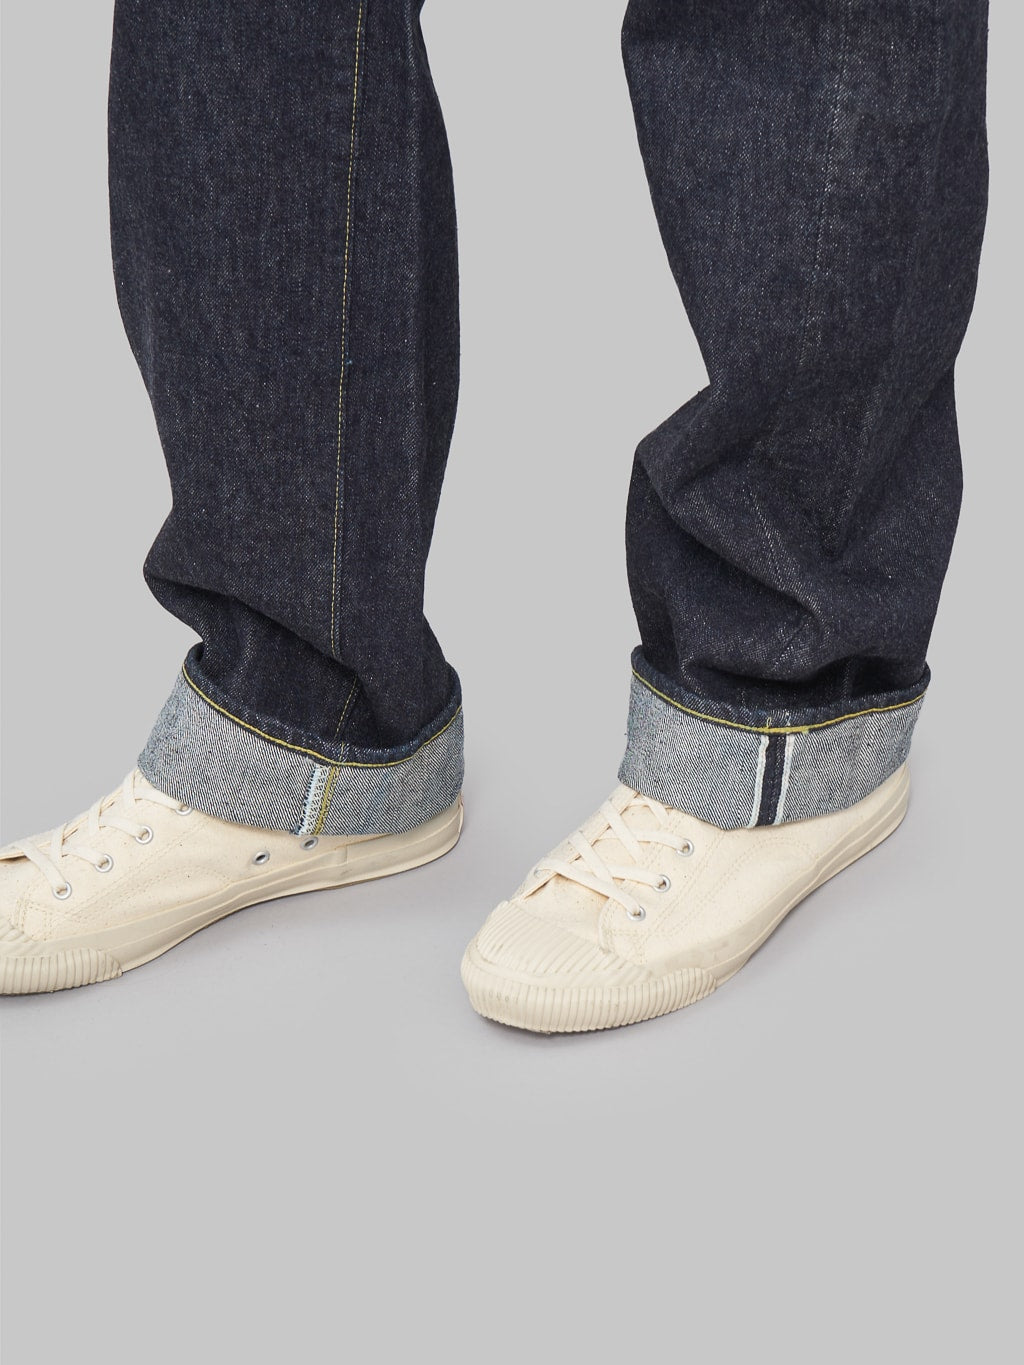 tcb s40s regular straight jeans selvedge detail